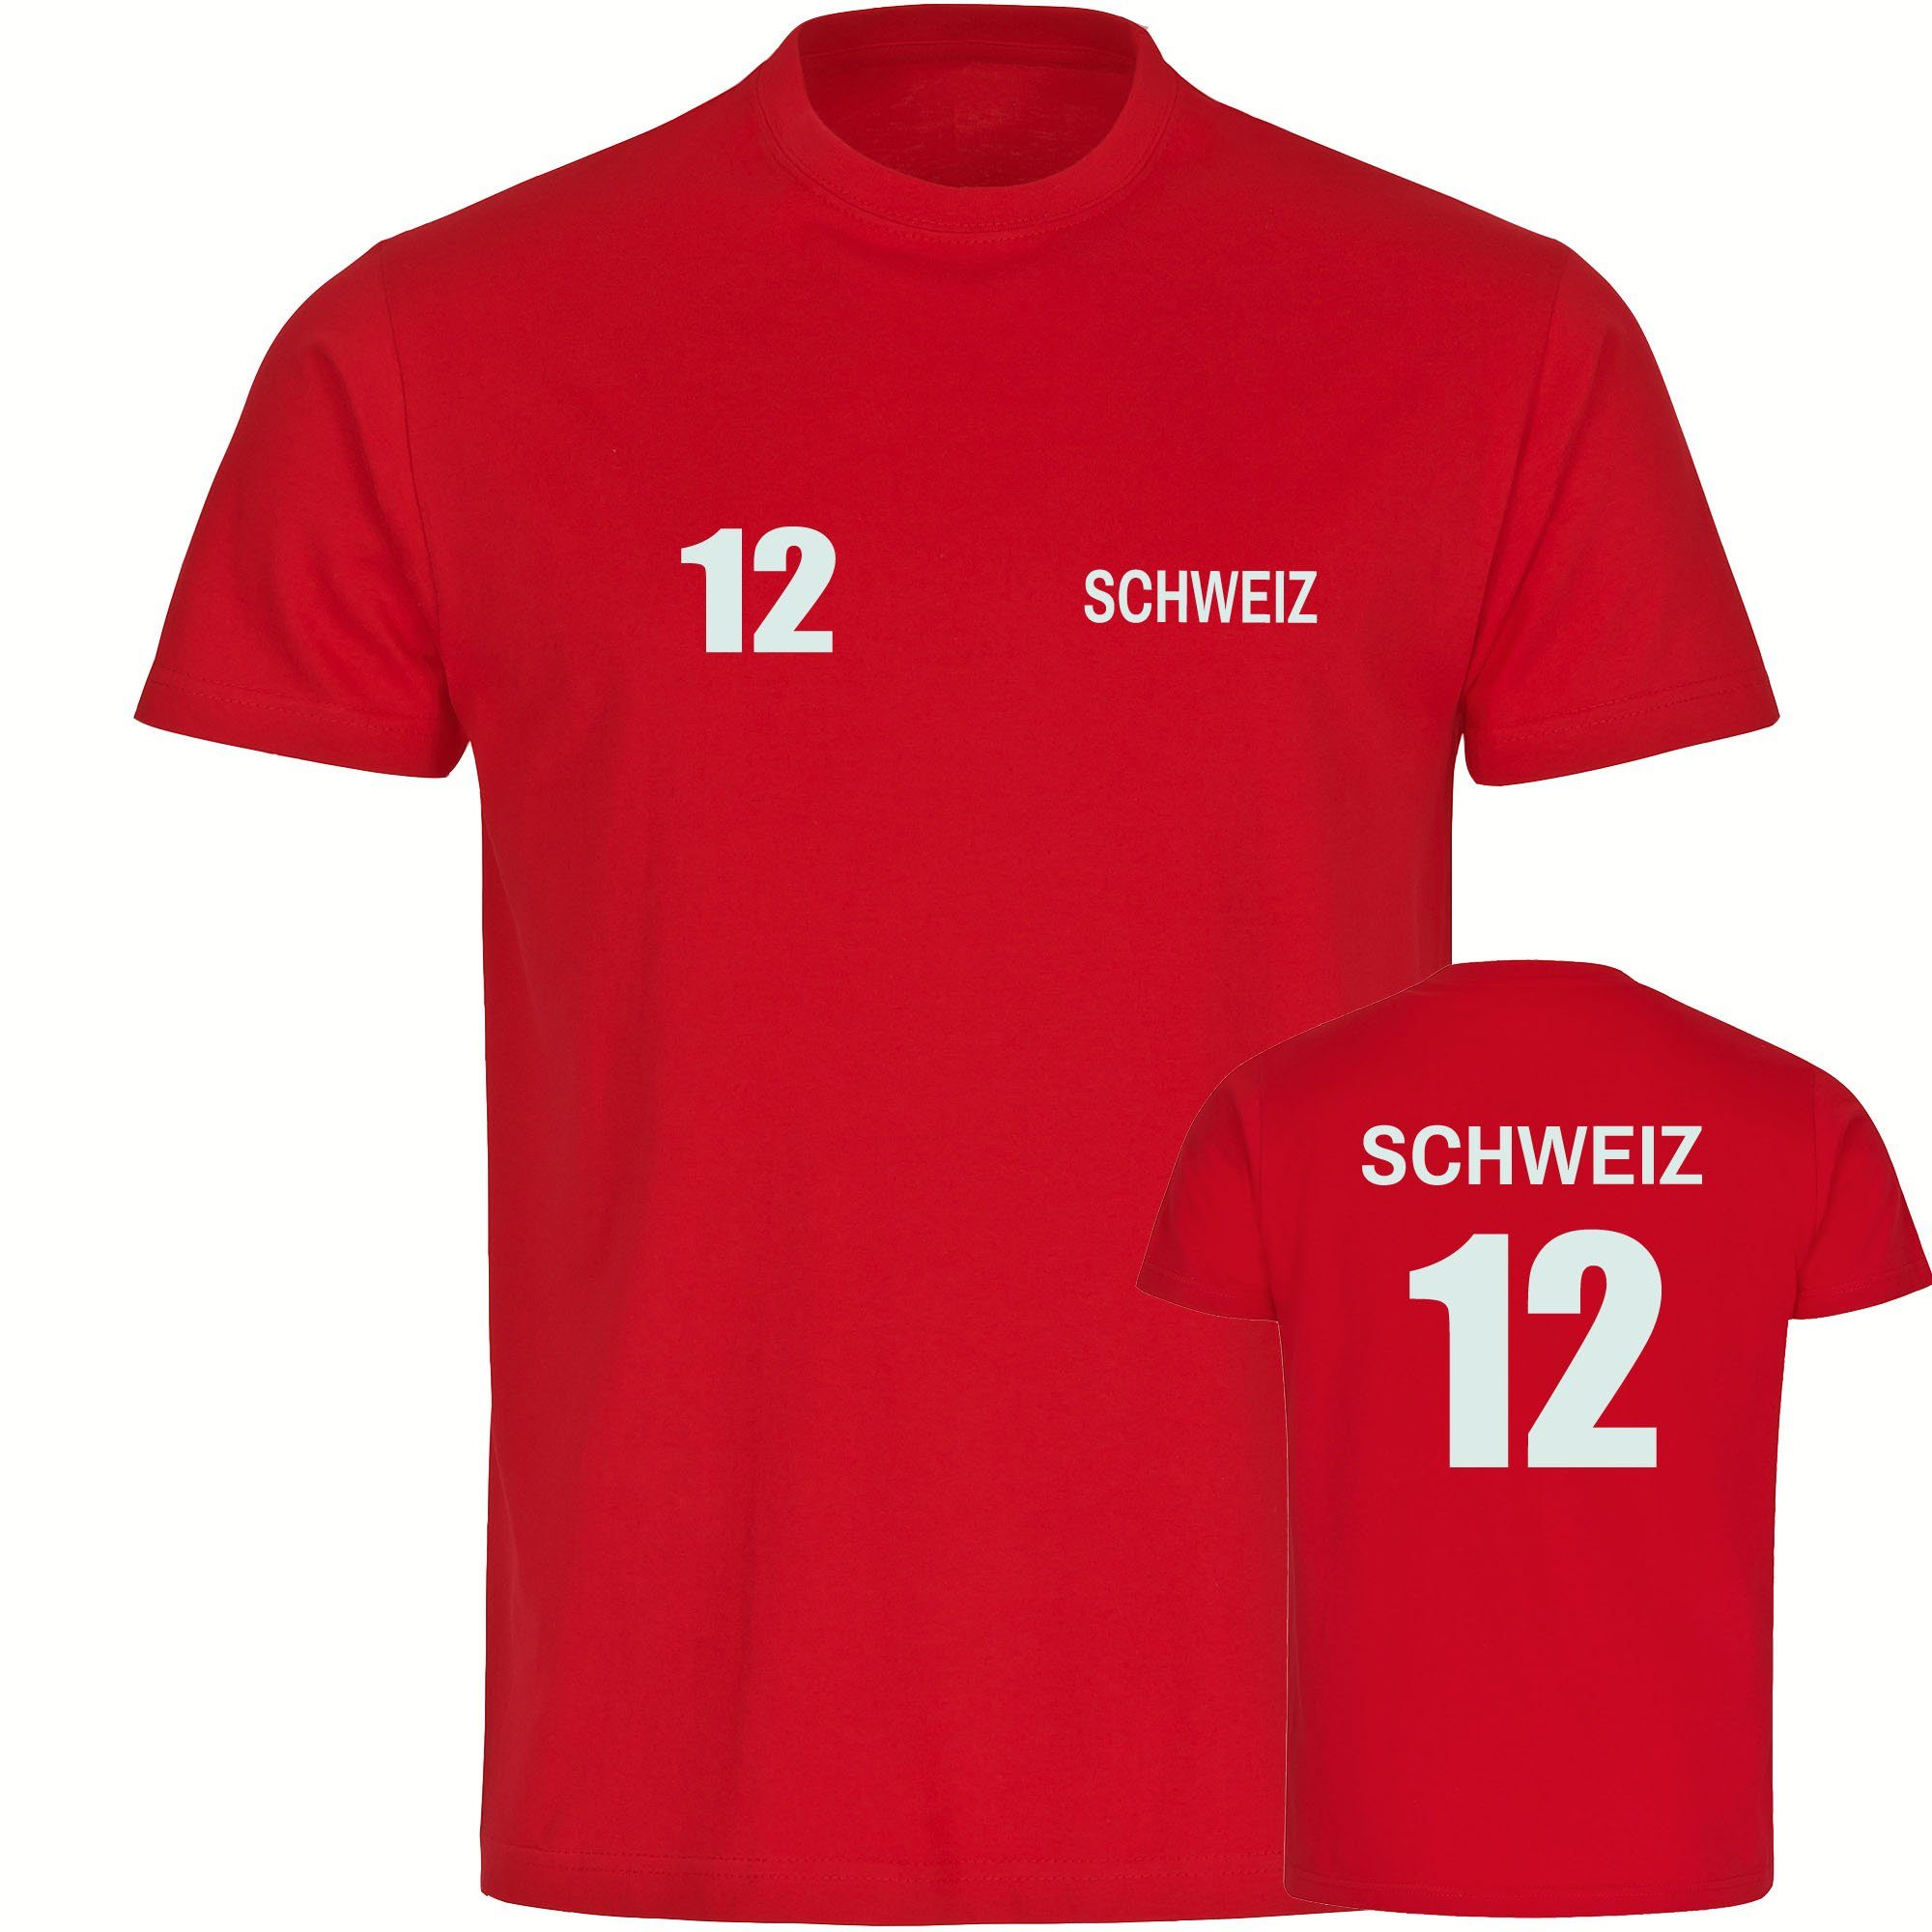 multifanshop T-Shirt Herren Schweiz - Trikot 12 - Männer